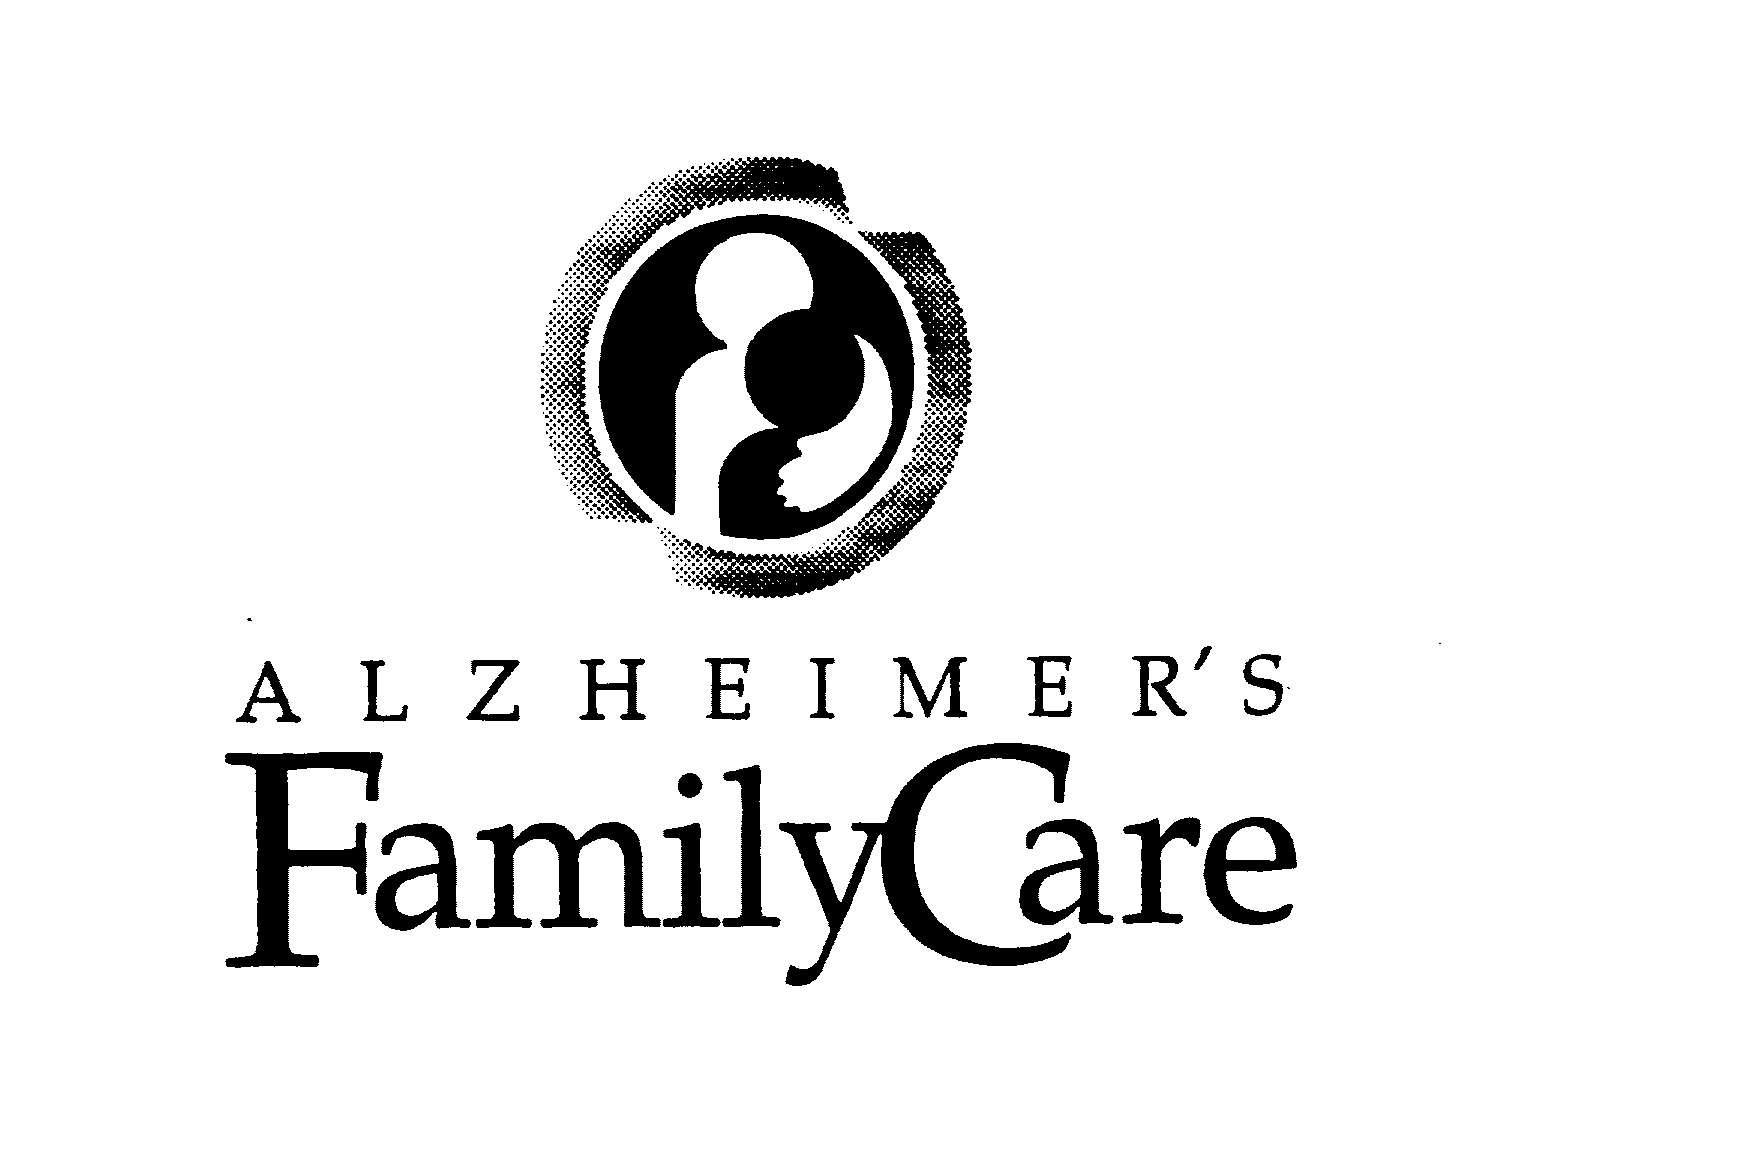  ALZHEIMER'S FAMILYCARE